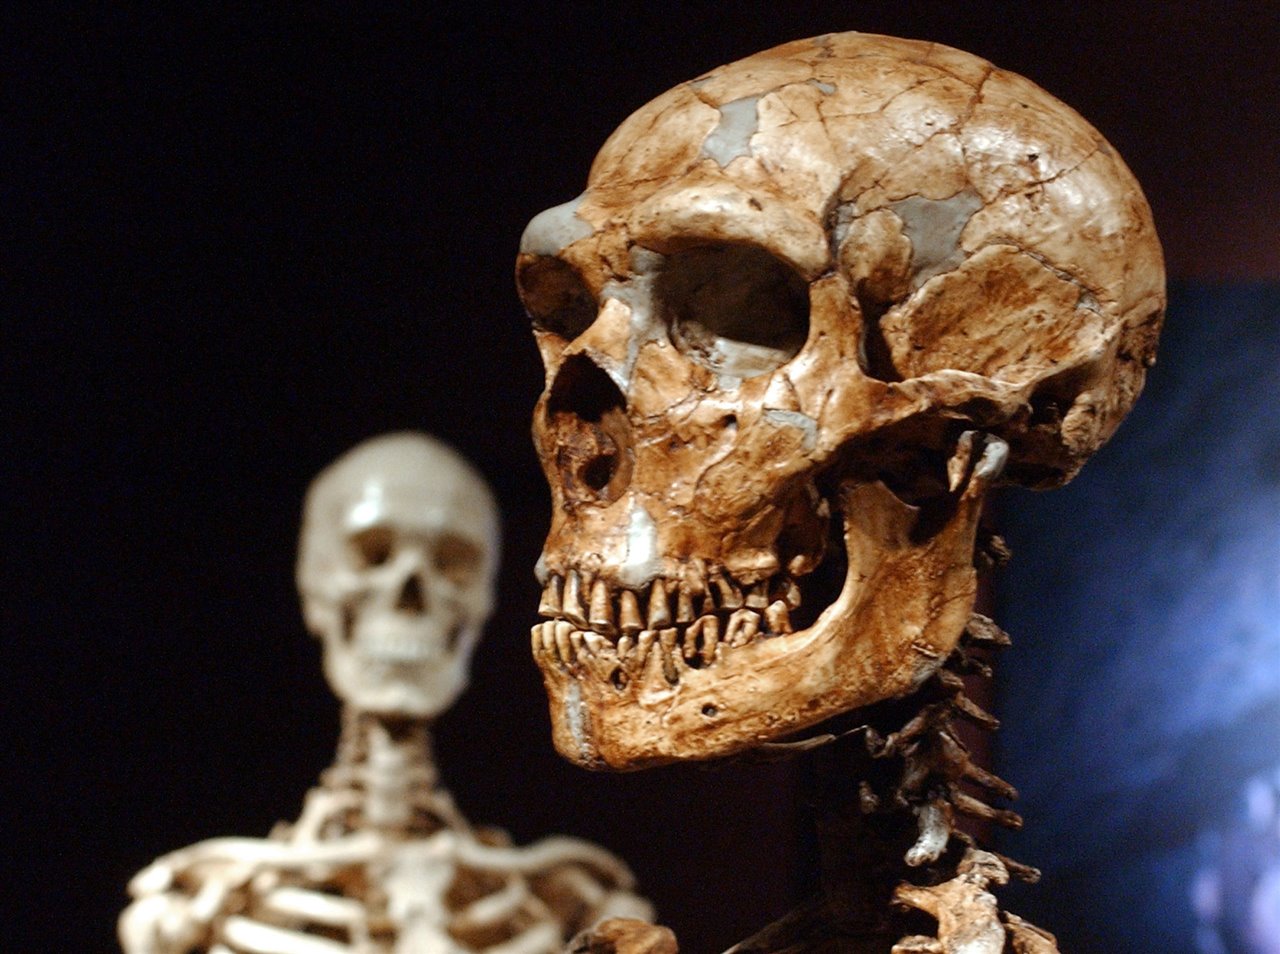 Cráneo de neanderrtal